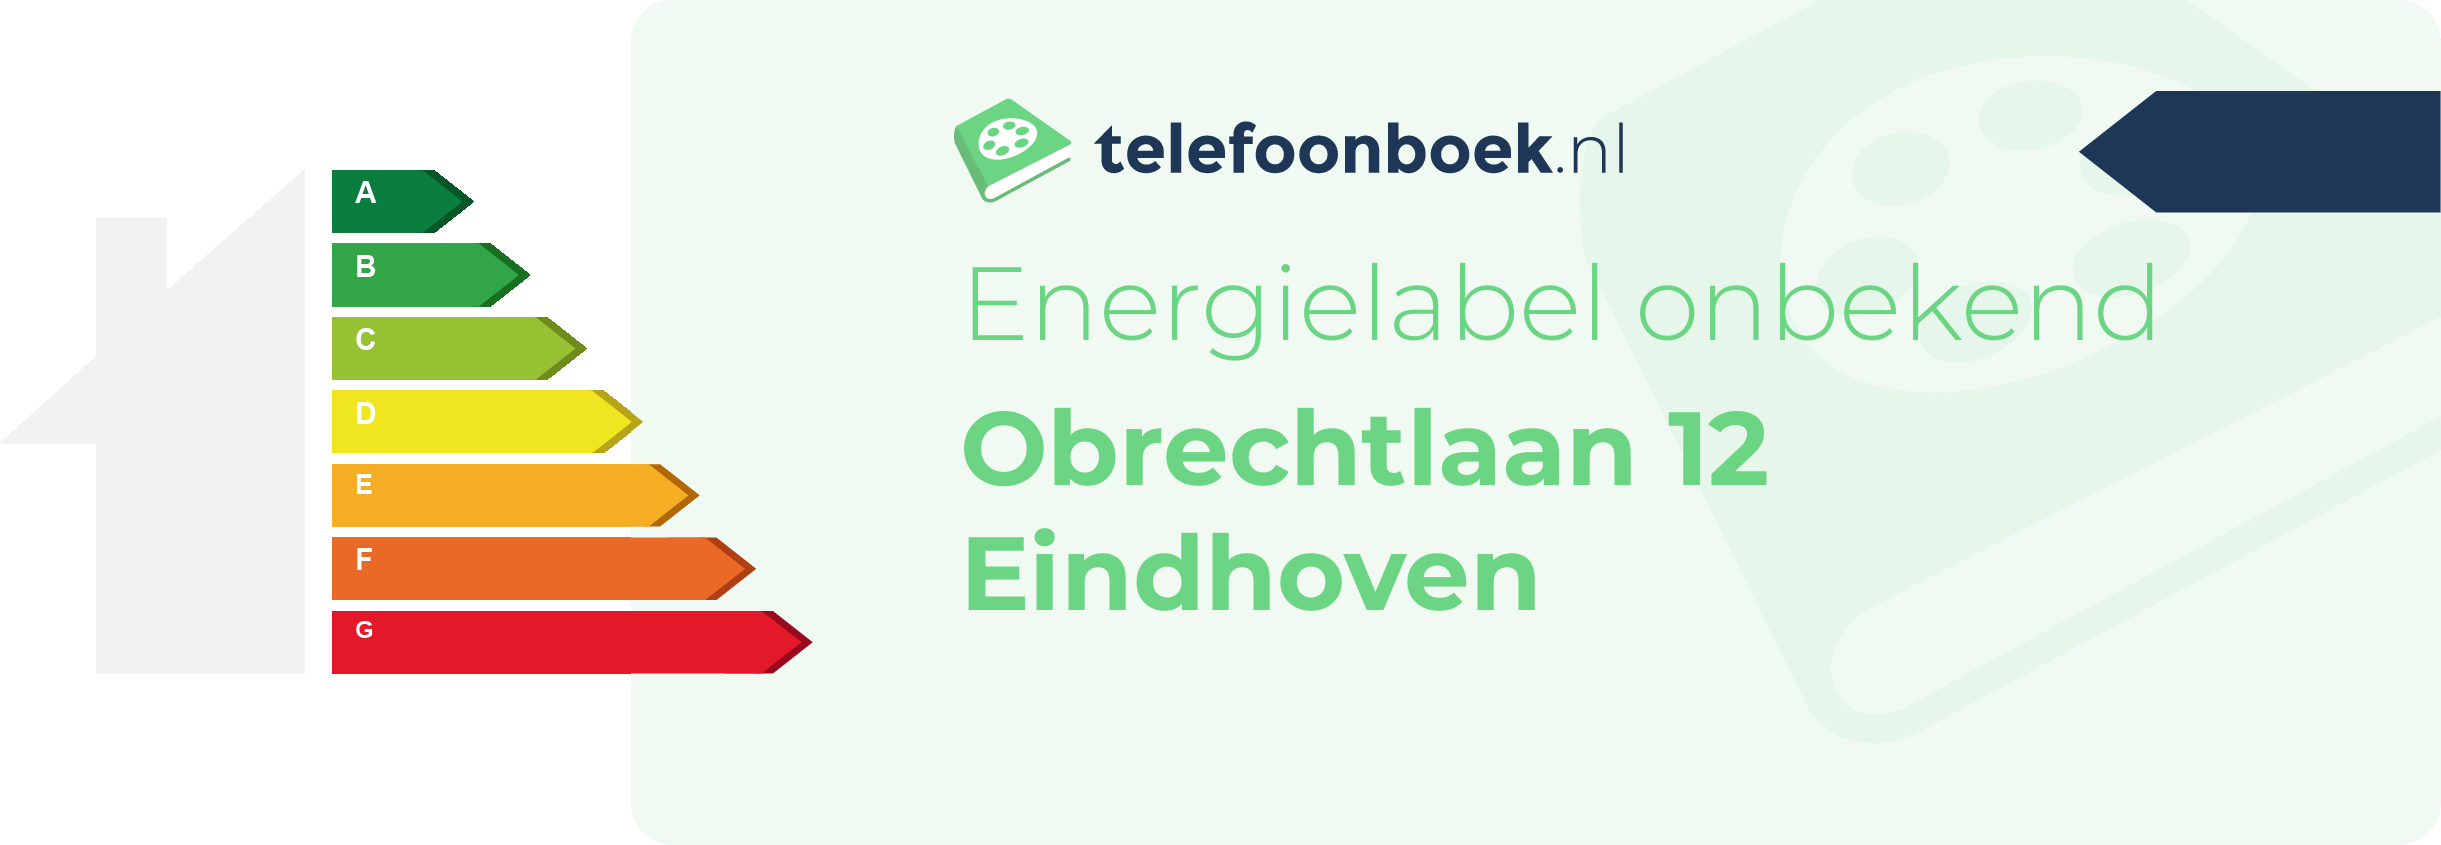 Energielabel Obrechtlaan 12 Eindhoven